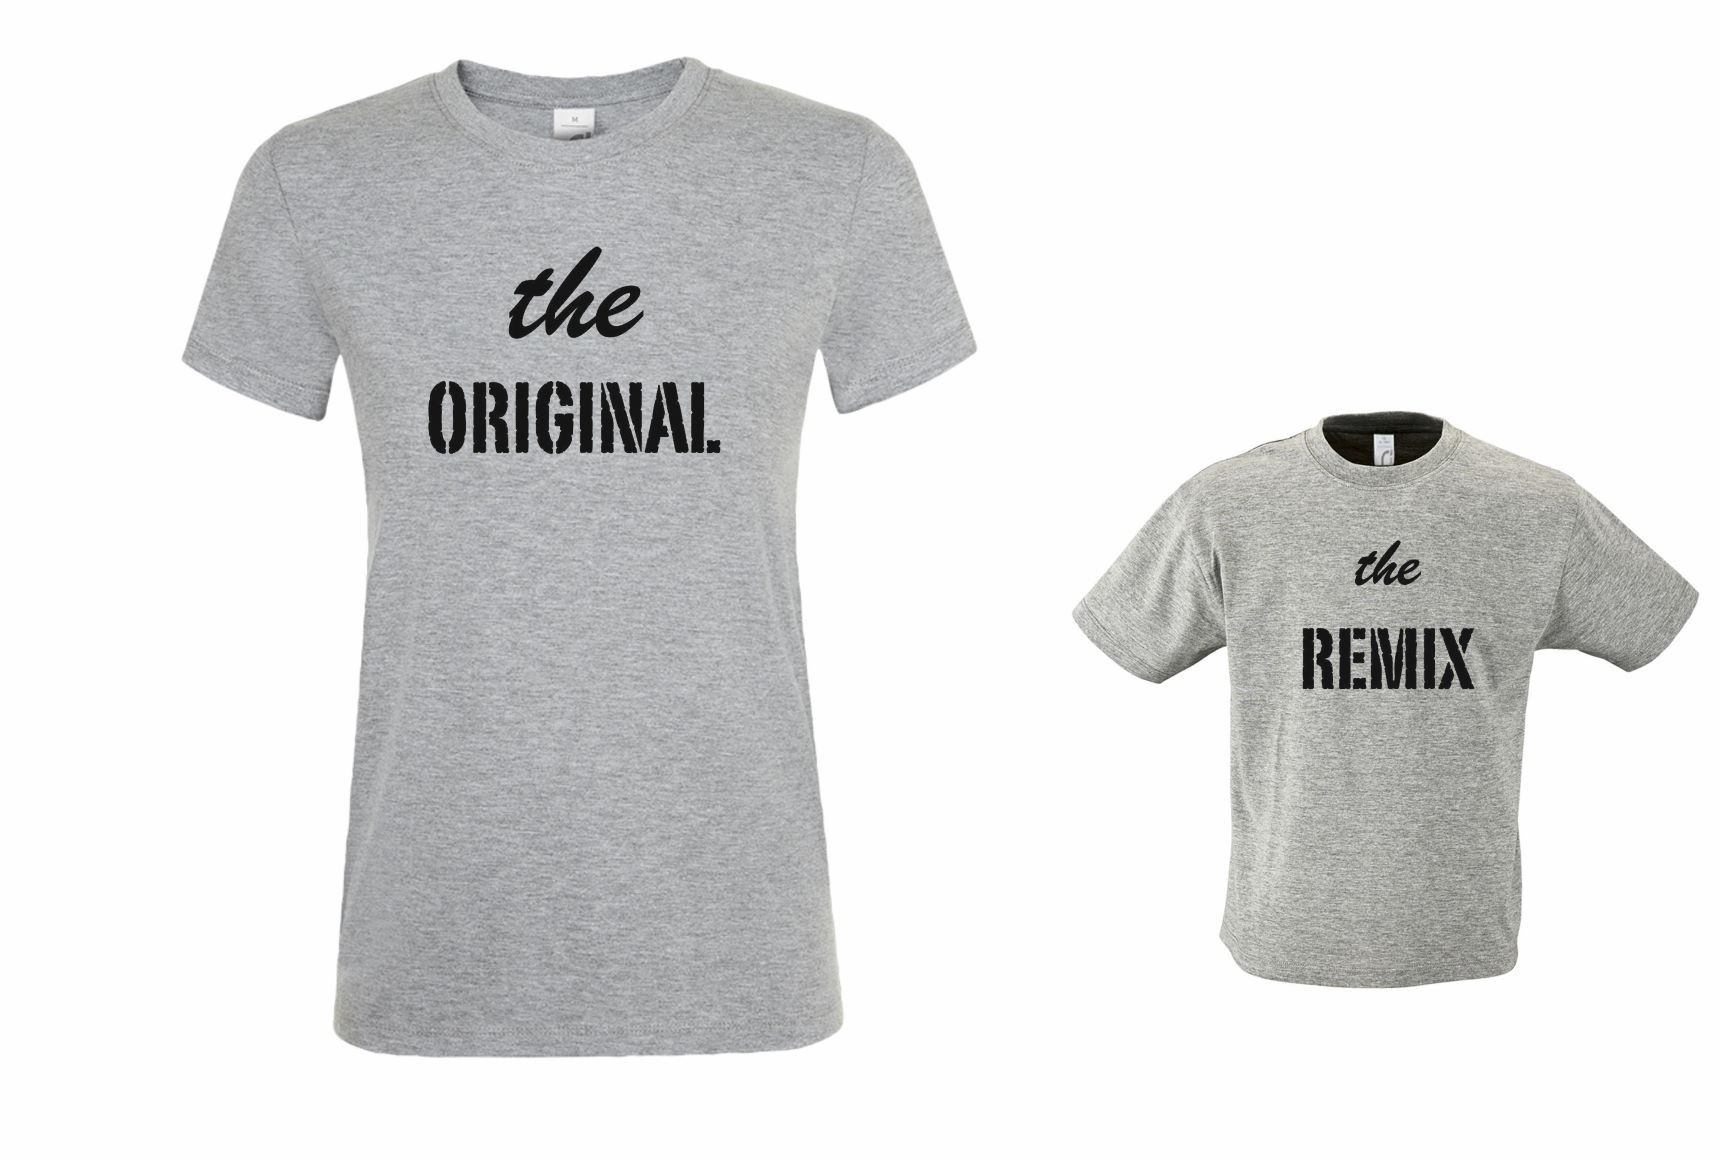 Camisetas Original y Remix